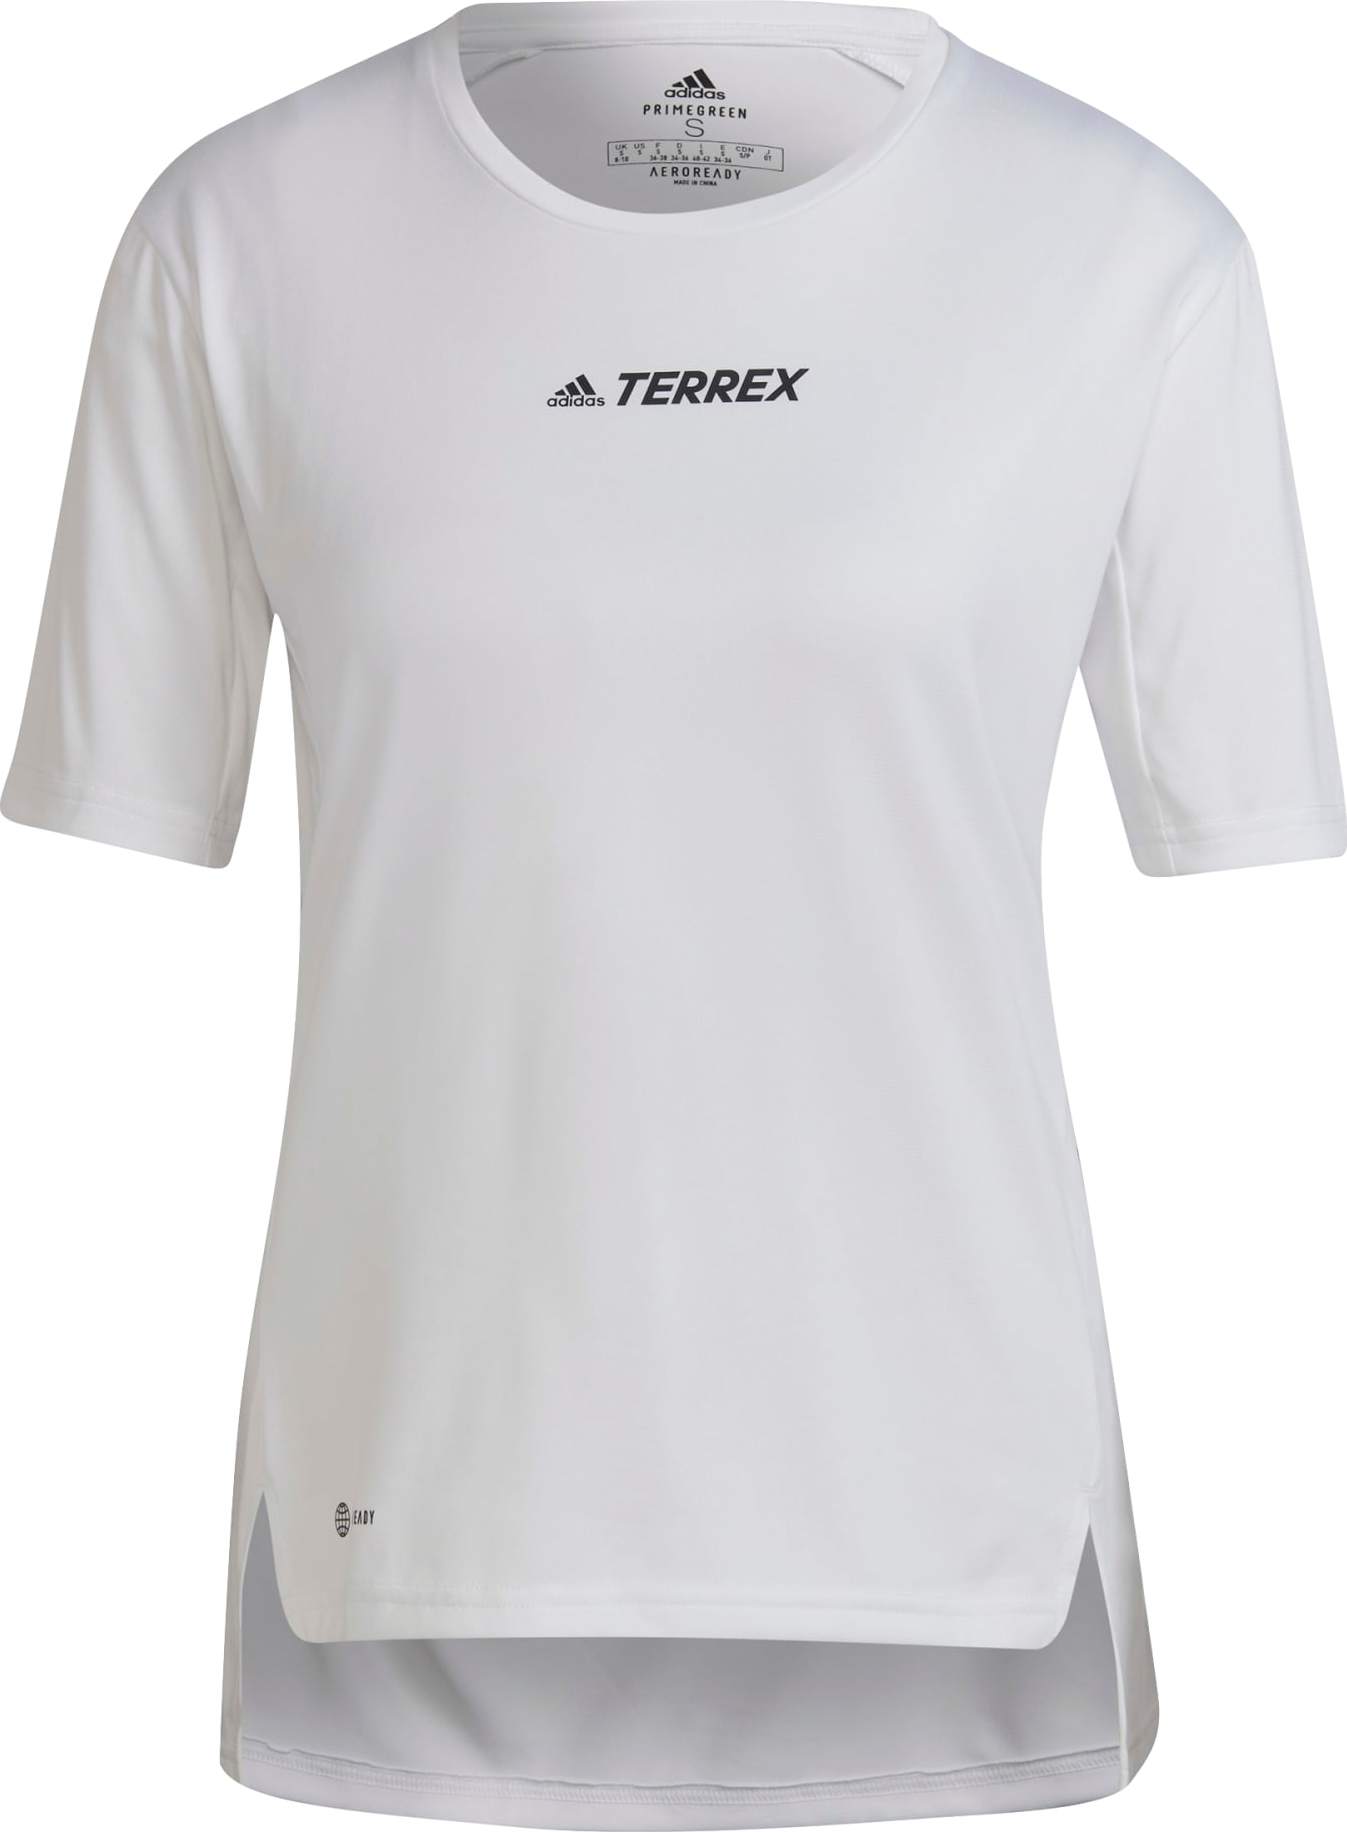 Adidas Women's Terrex Multi T-Shirt White XS, White